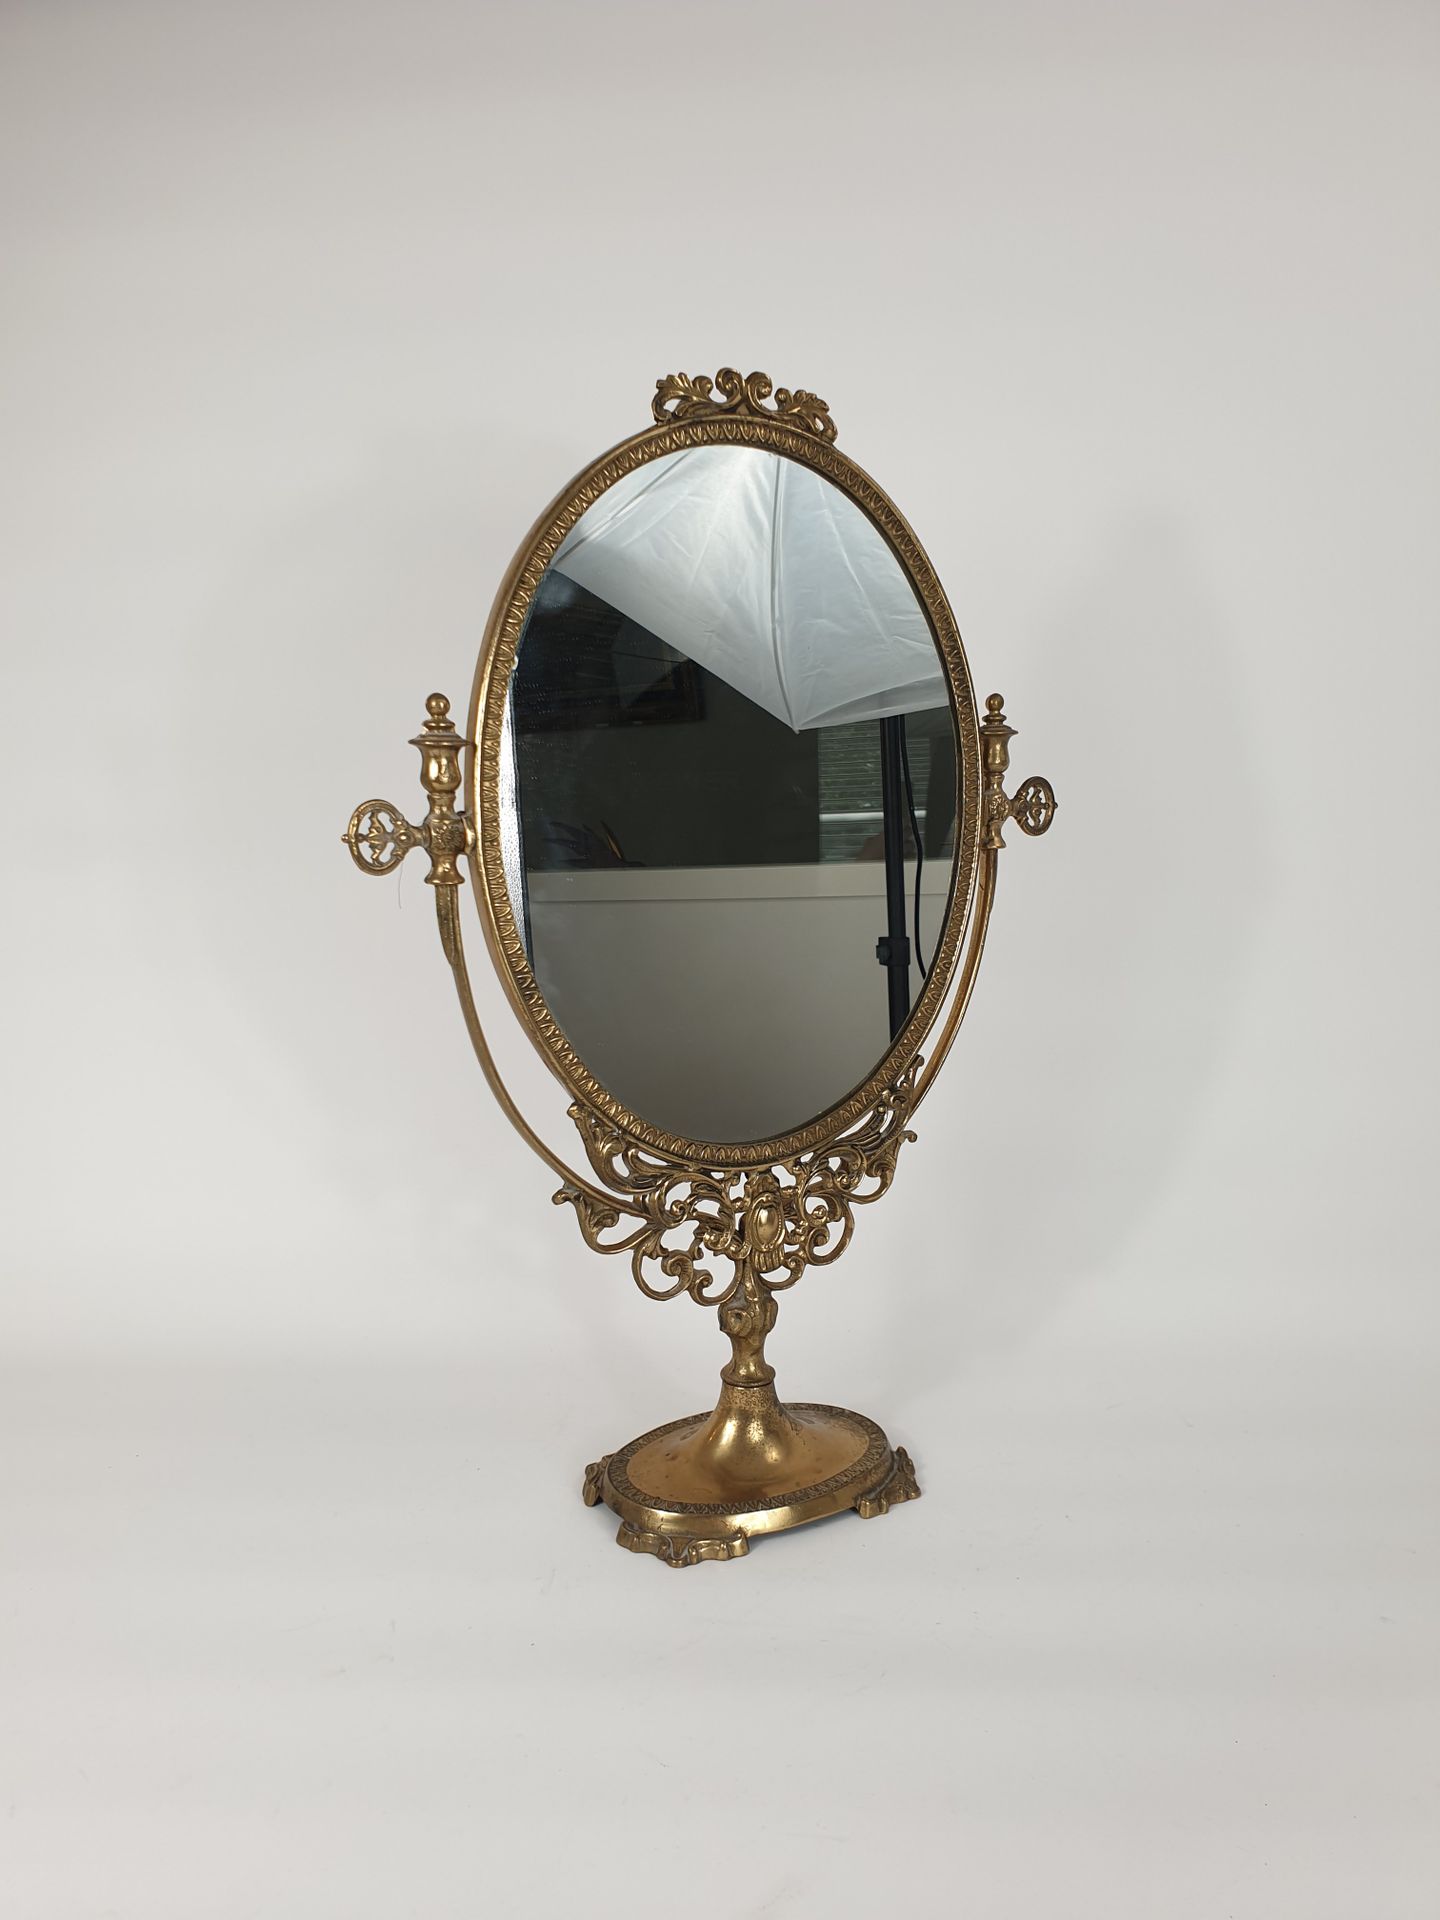 Null Ovaler, kippbarer Tischspiegel aus Messing.
54,5 x 39 x 12 cm